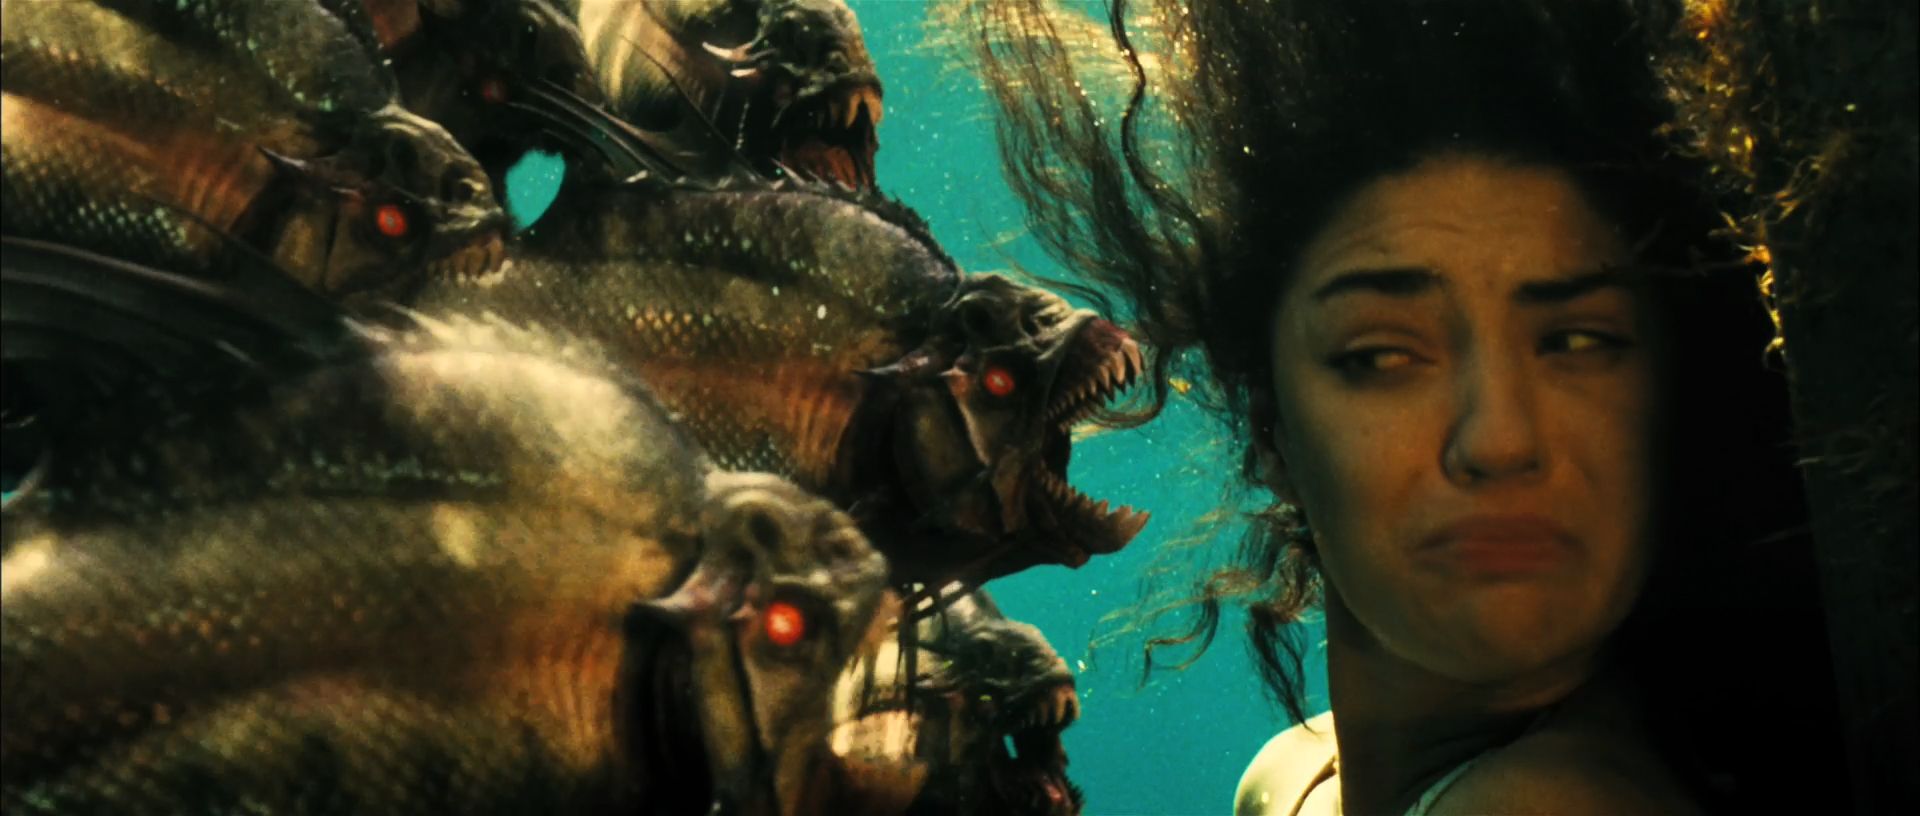 Piranha 3D Trailer Still #1